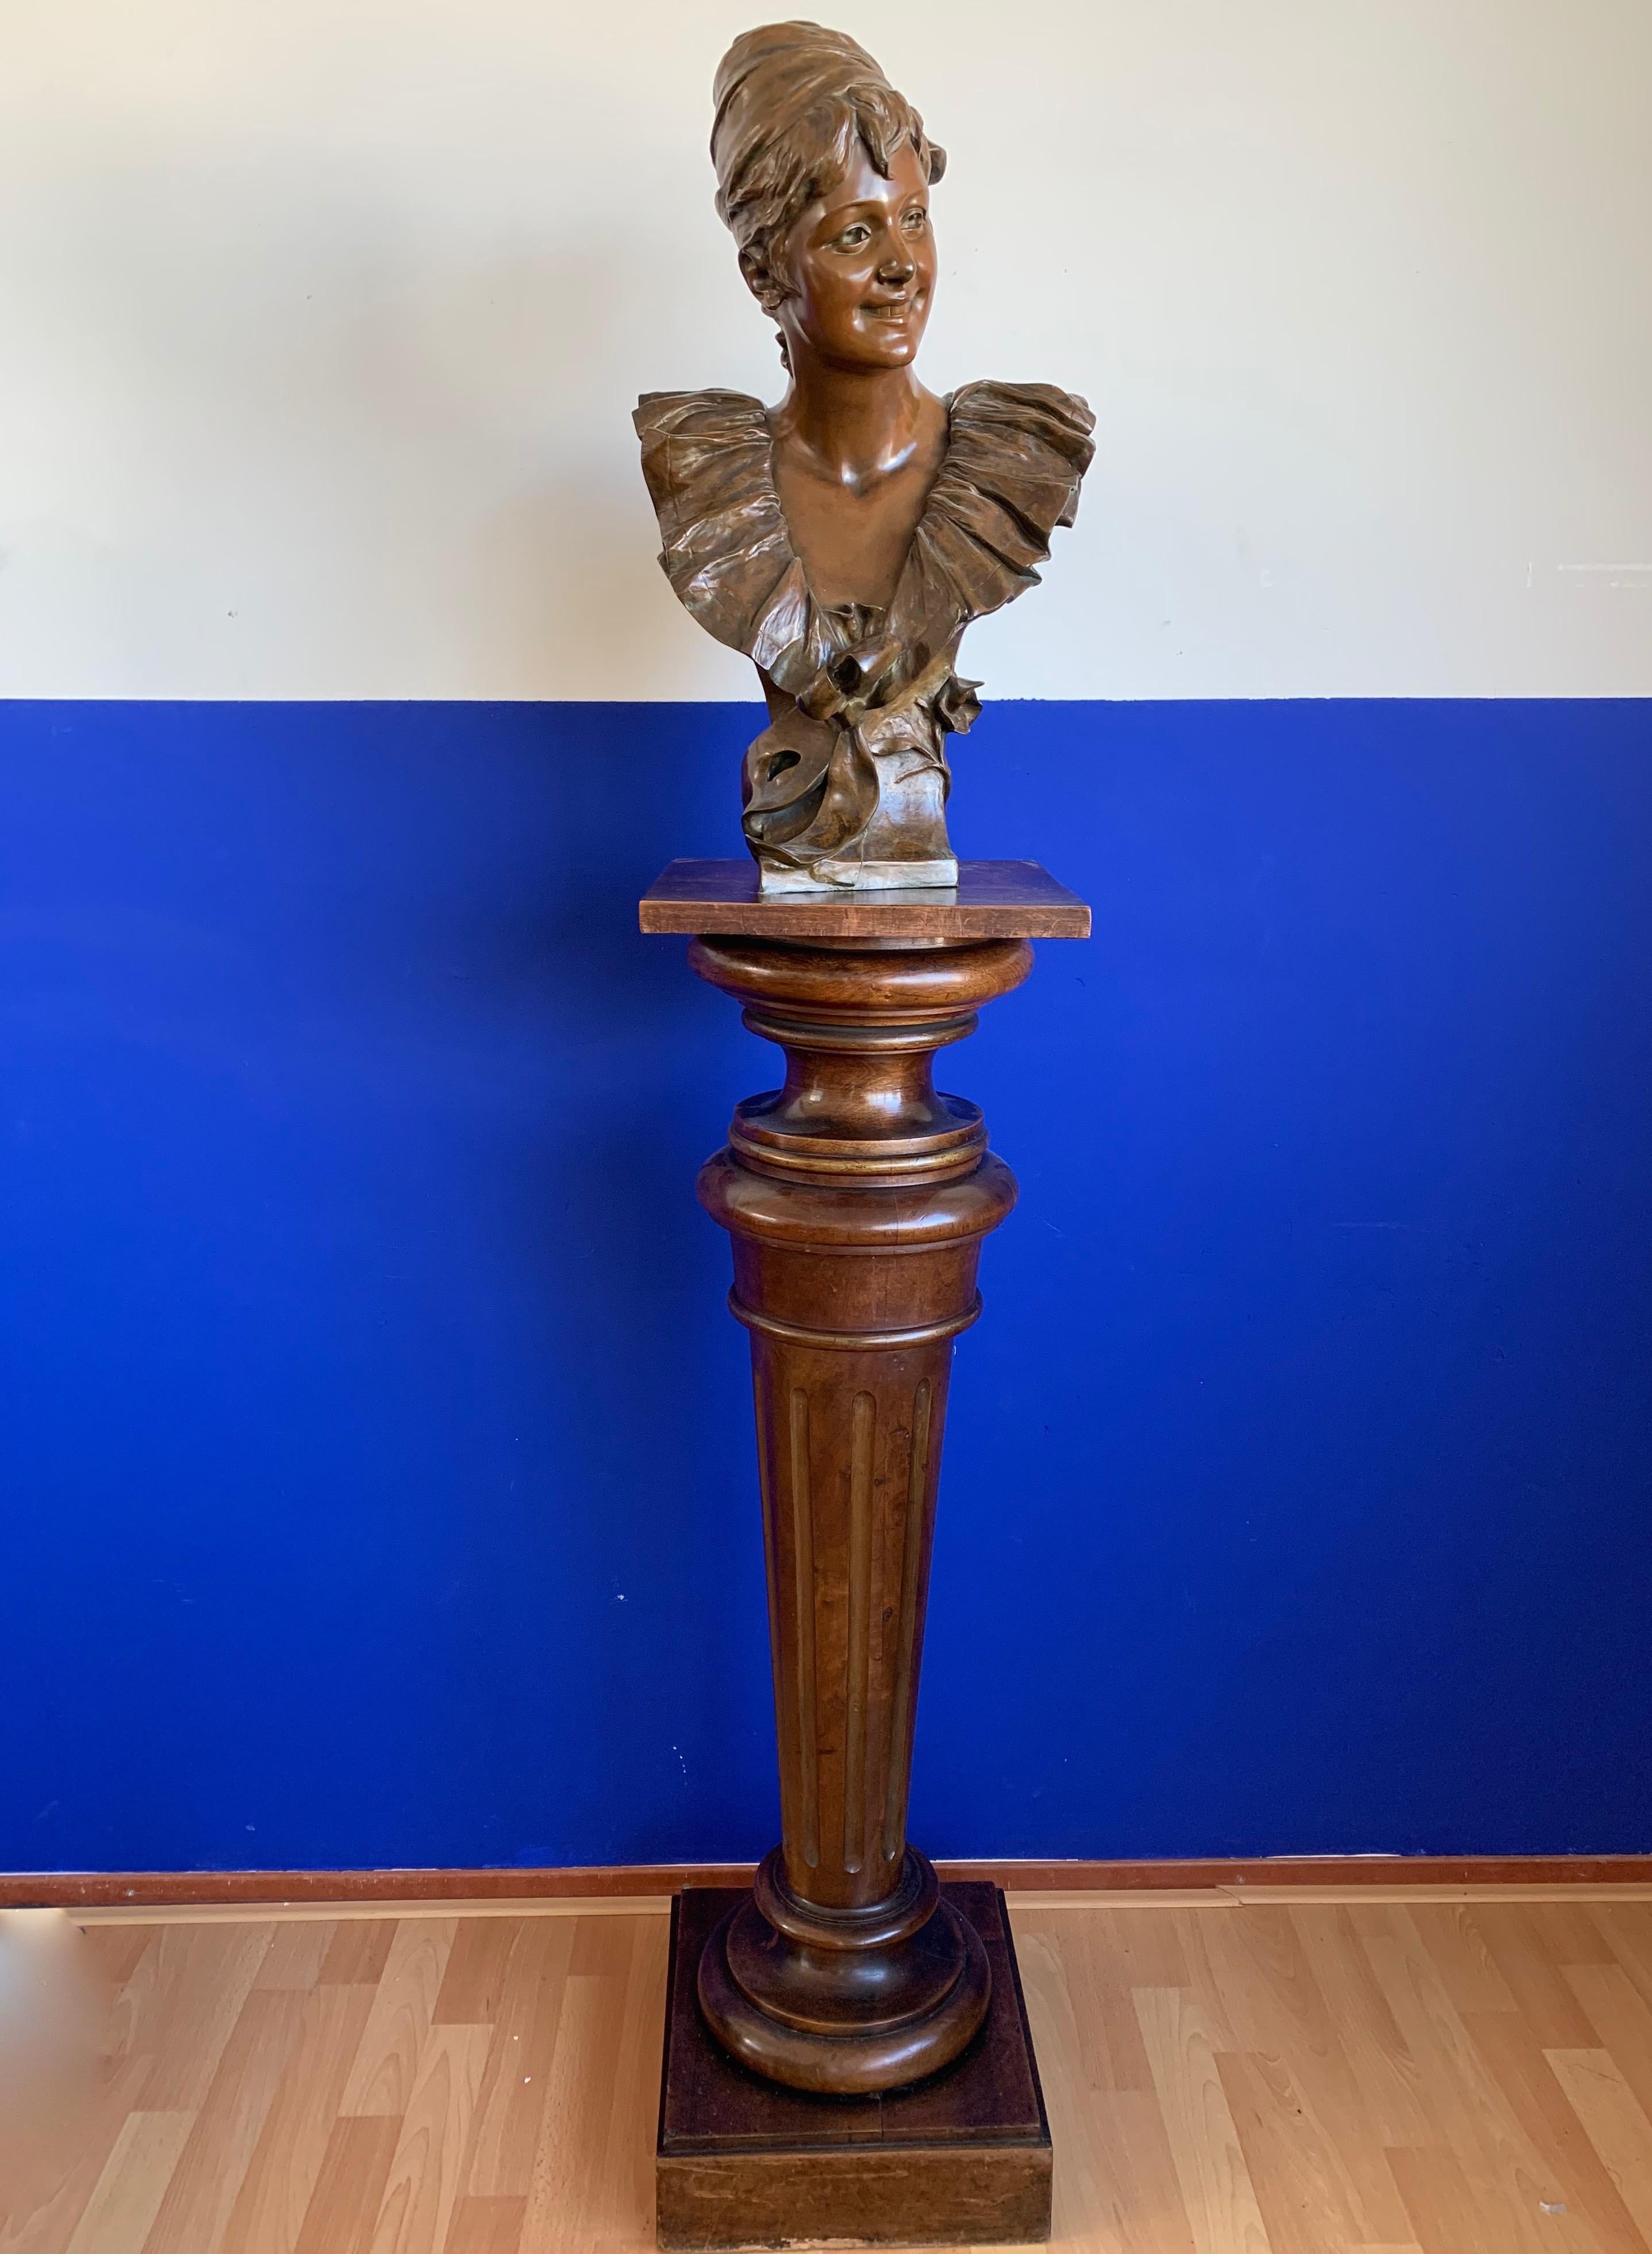 Buste de la plus belle facture avec une belle patine originale d'un important sculpteur belge 'George Van der Straeten'

Ce superbe buste représente une belle jeune femme avec un grand col à volants. Ses cheveux sont relevés et elle porte une